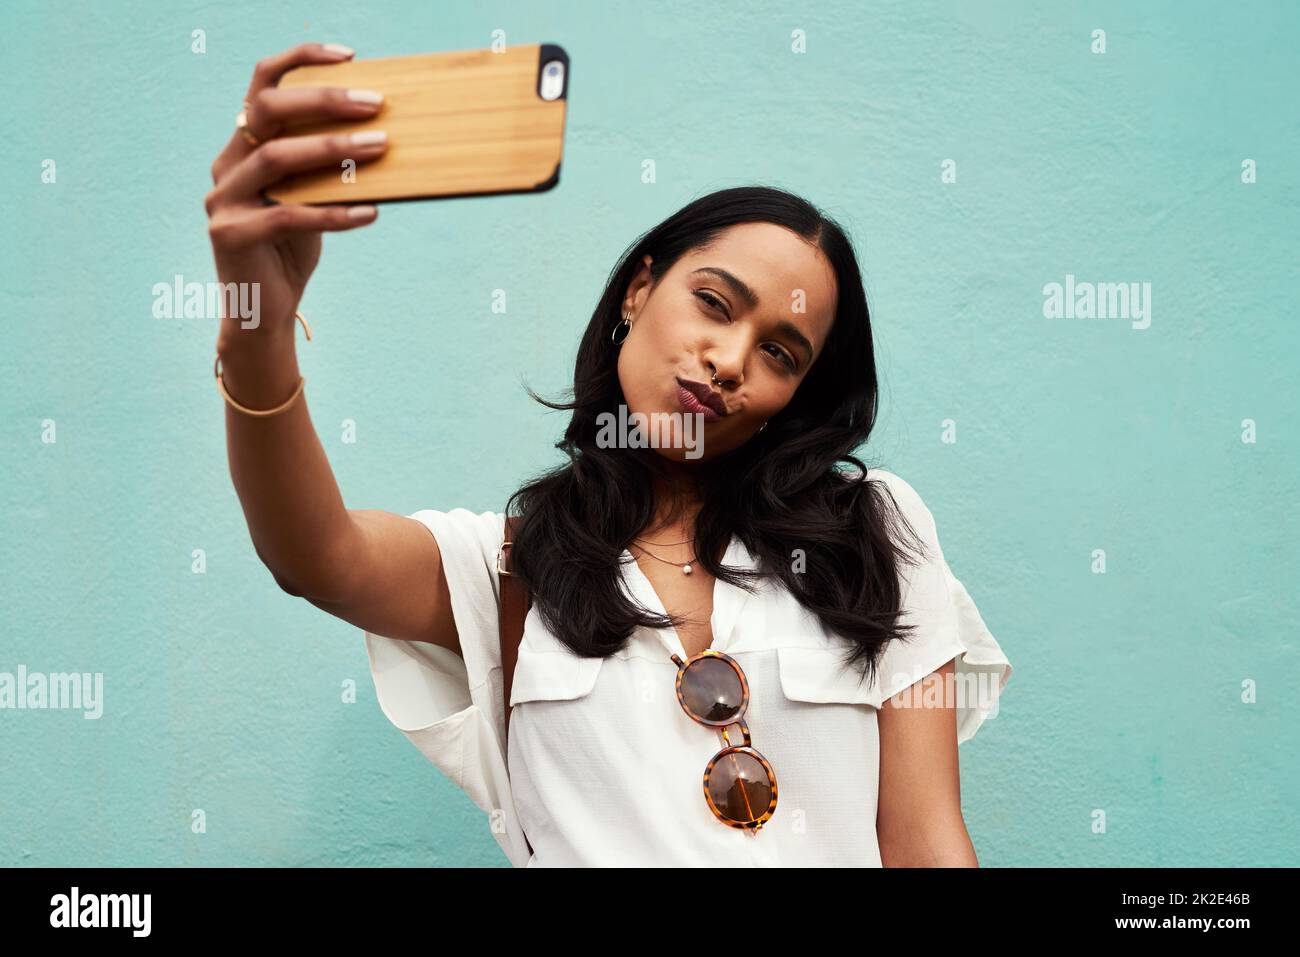 Wo wären Millennials ohne das Selfie? Abgeschnittene Aufnahme einer attraktiven jungen Frau, die mit ihrem Handy ein Selfie vor blauem Hintergrund macht. Stockfoto